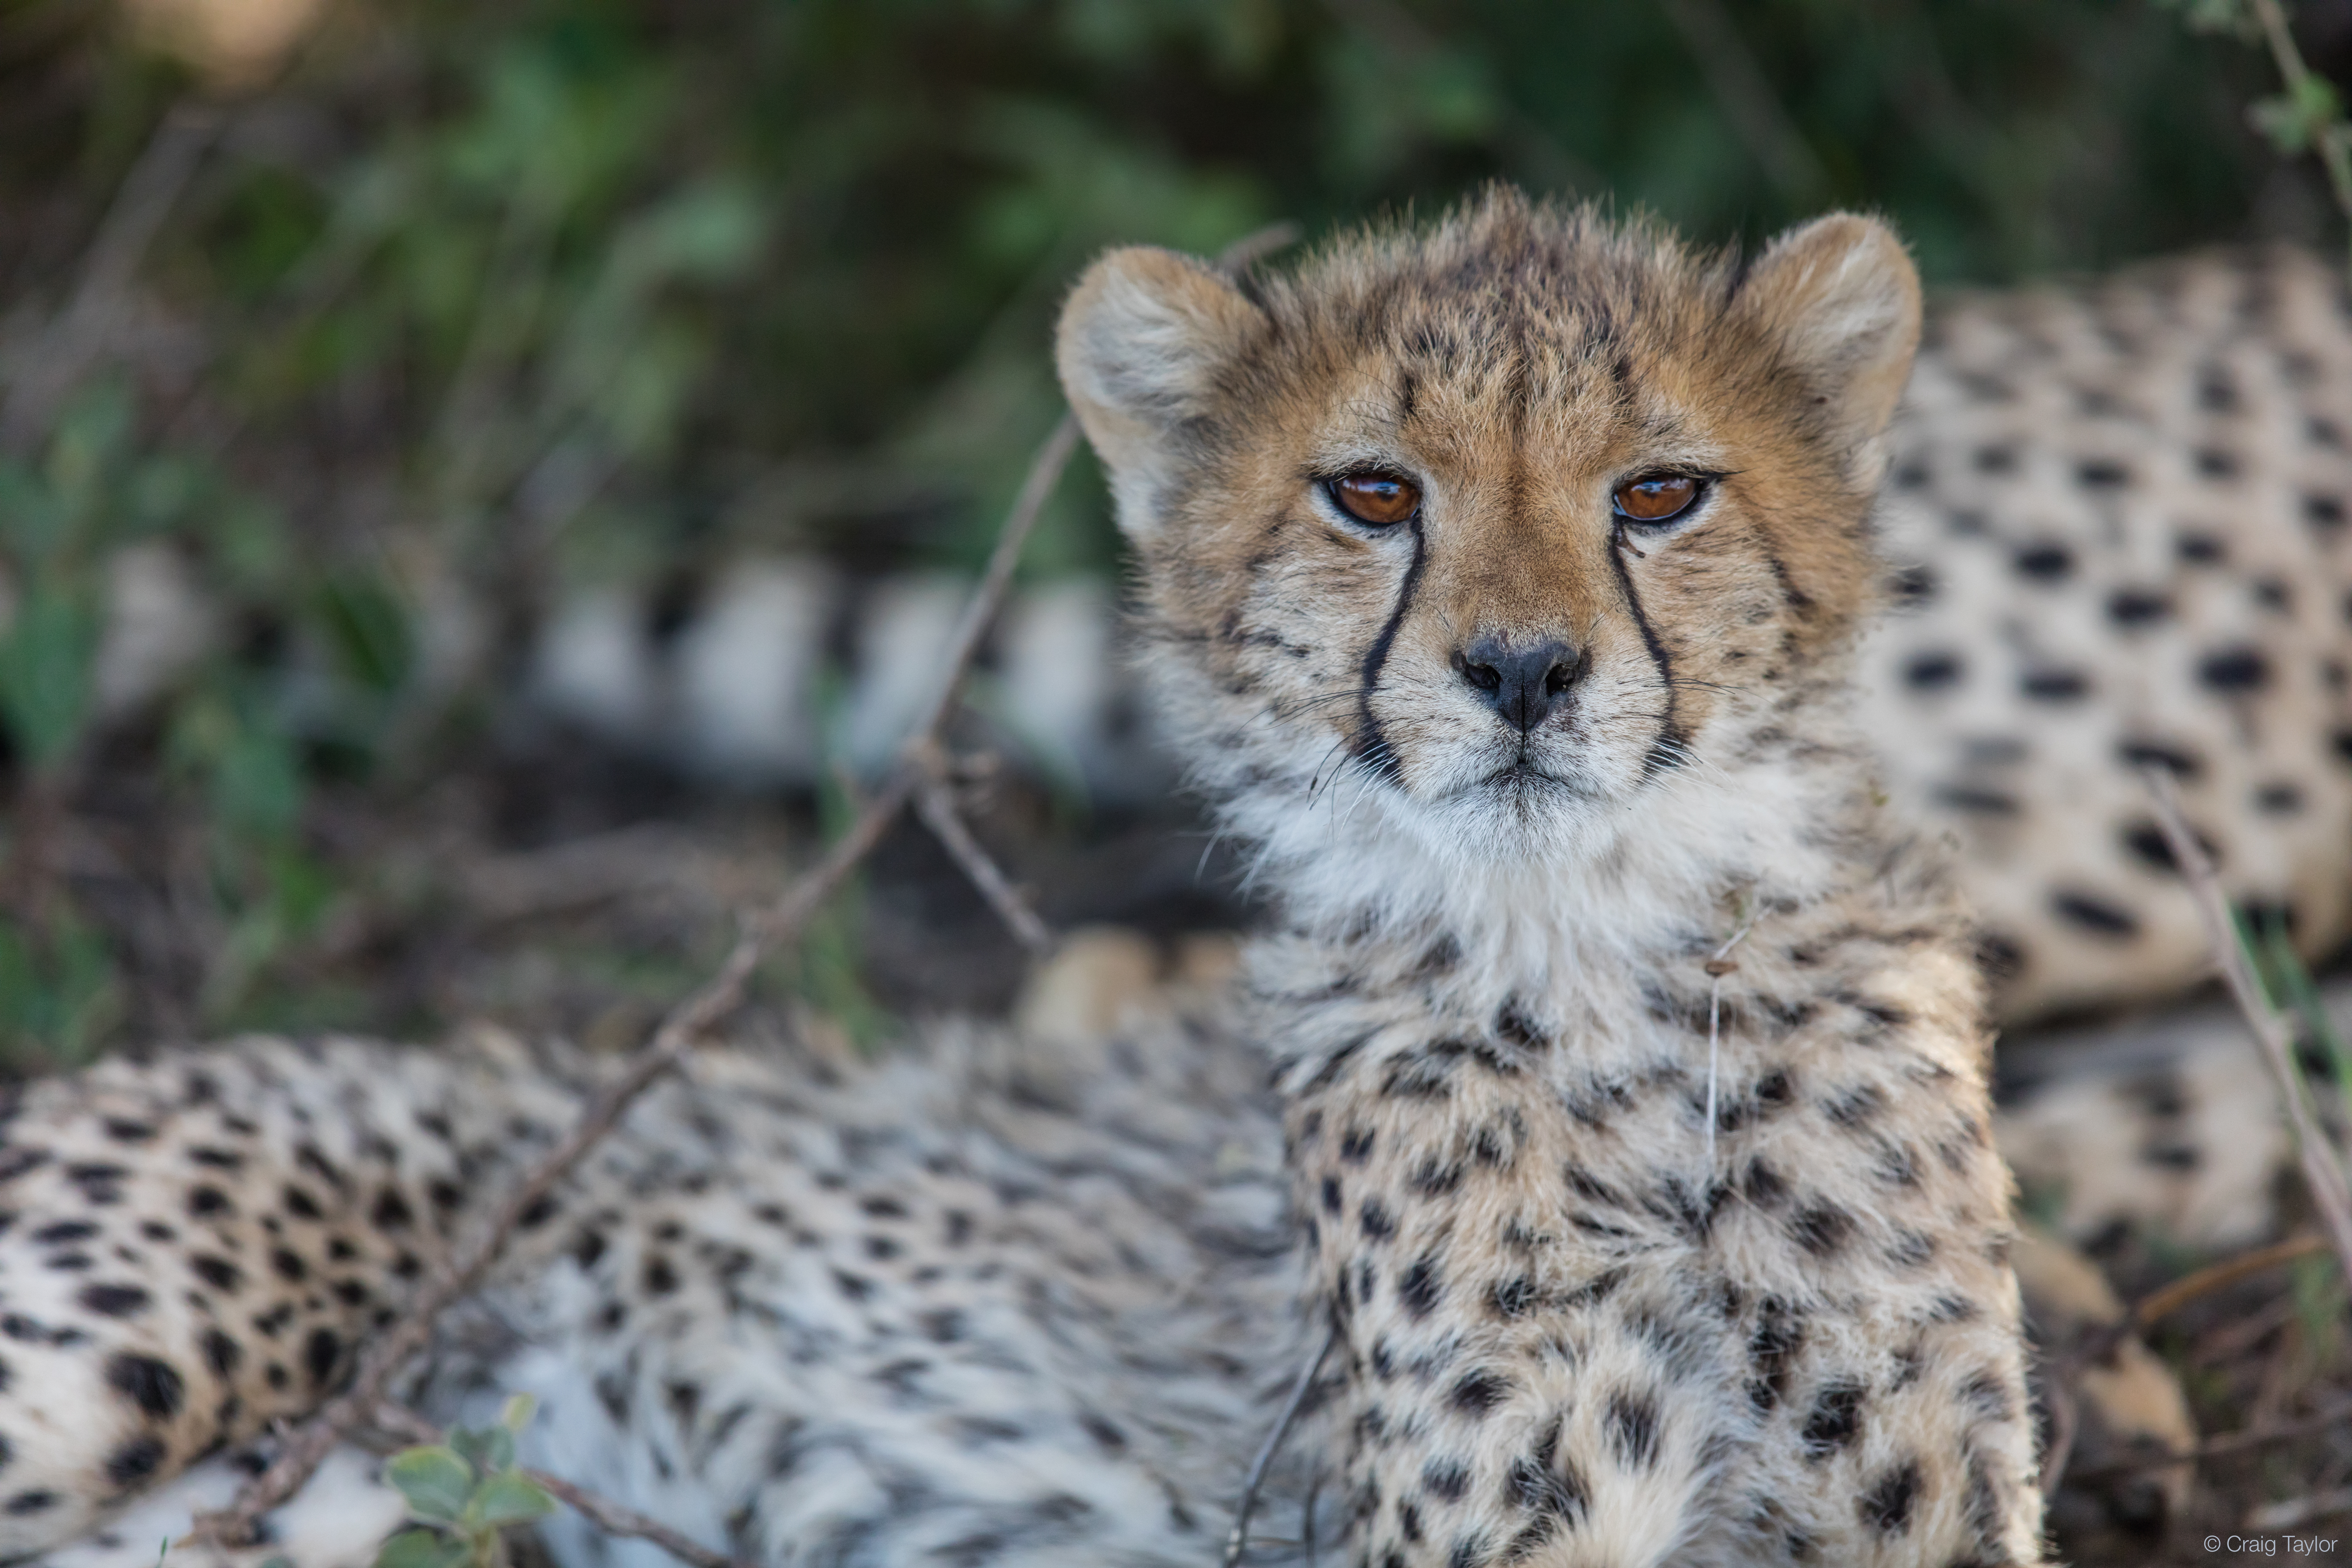 "Baby cheetah looking into camera"